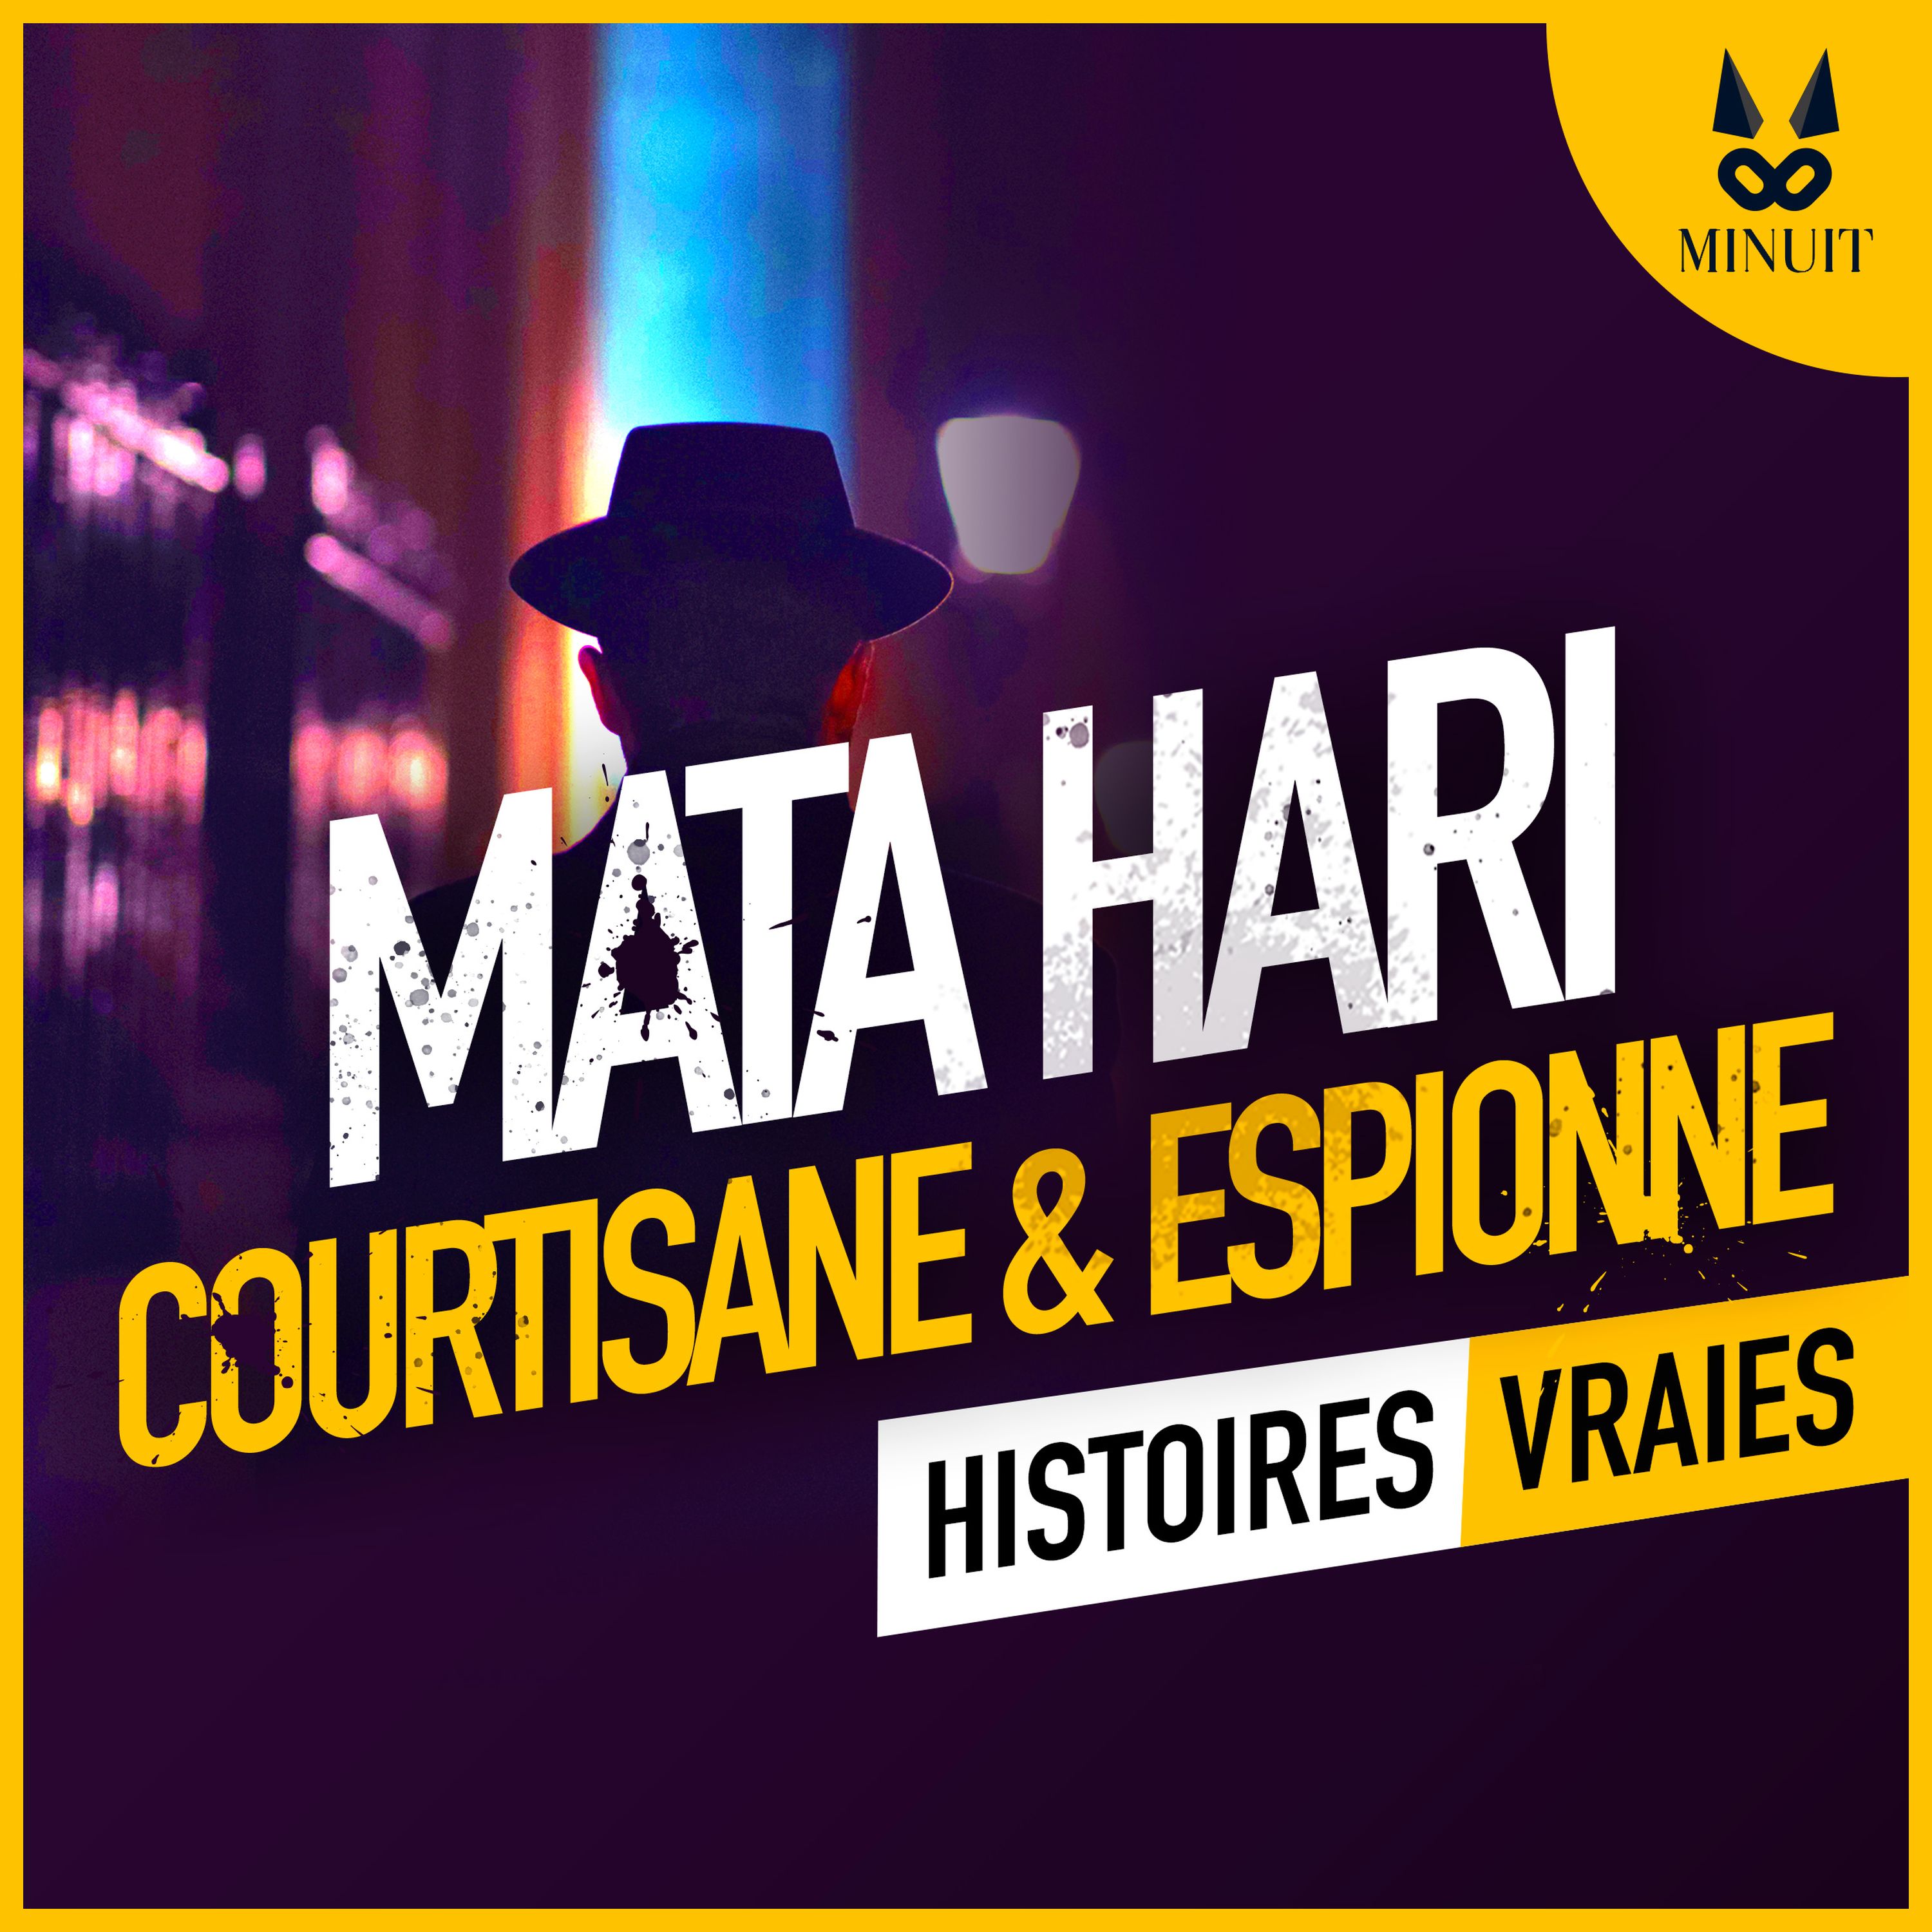 Mata Hari, courtisane et espionne • Episode 1 sur 4